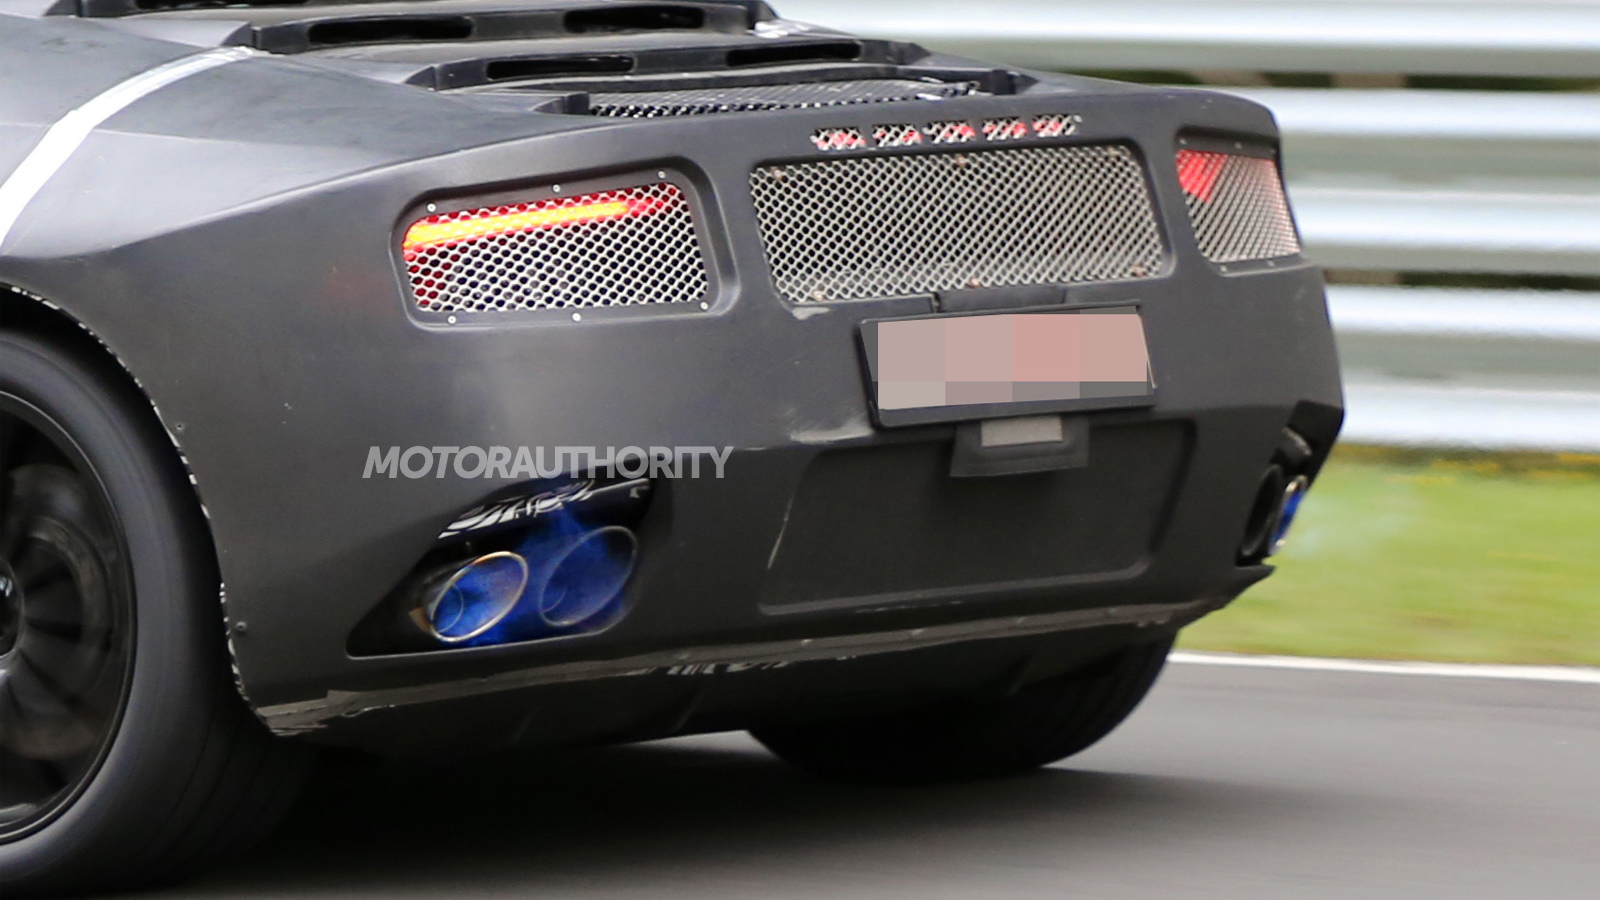 2015 Lamborghini Cabrera (Gallardo Replacement) spy shots